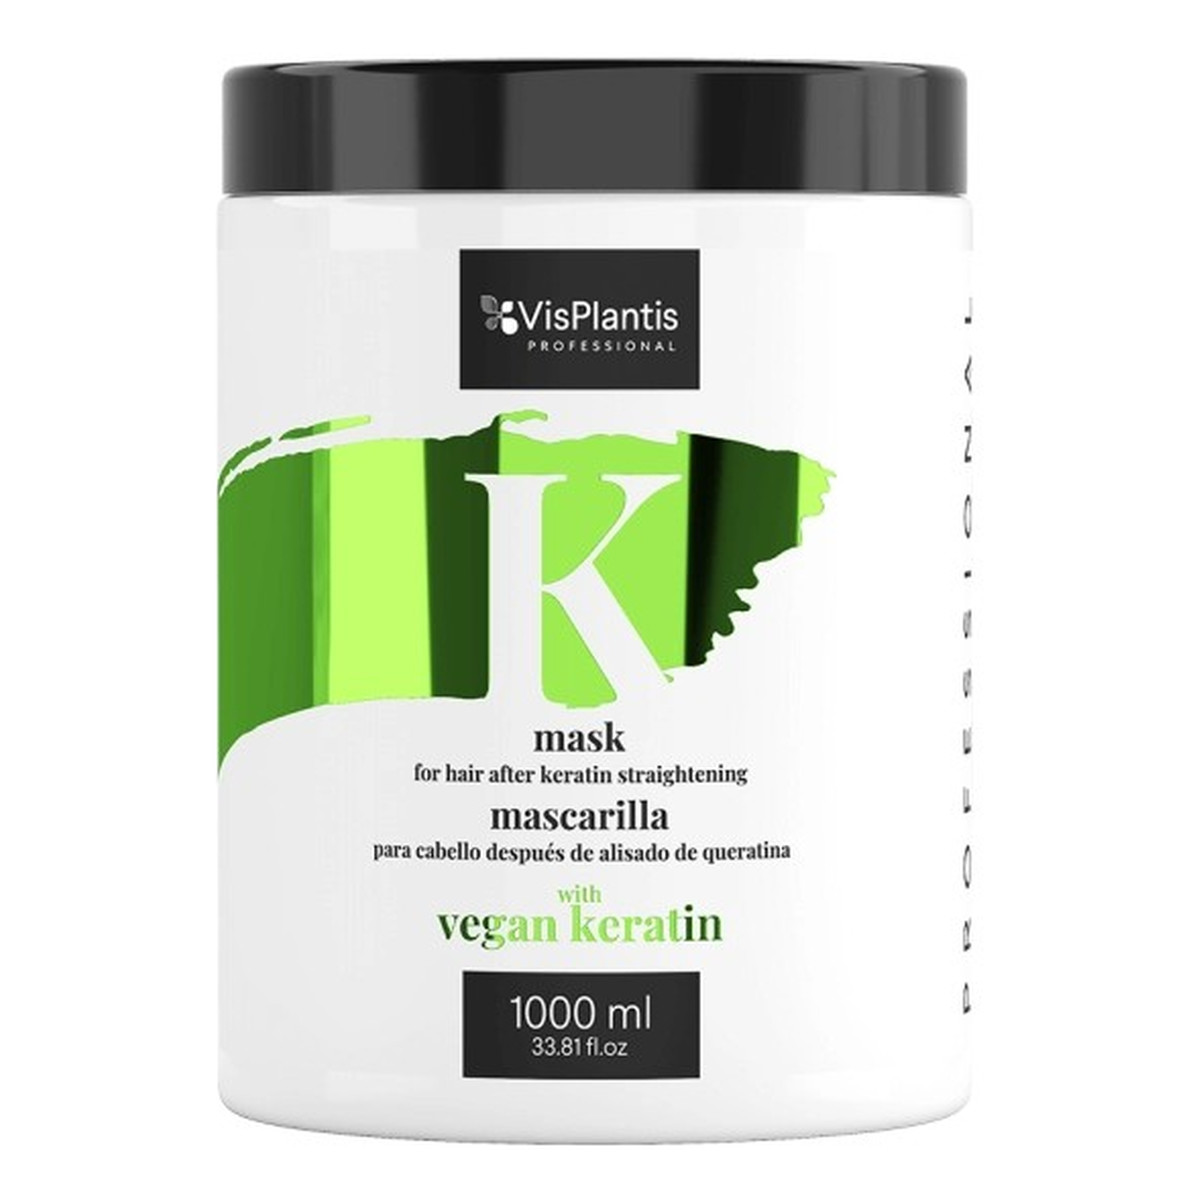 Vis Plantis Professional Maska do włosów po keratynowym prostowaniu - Vegan Keratin 1000ml